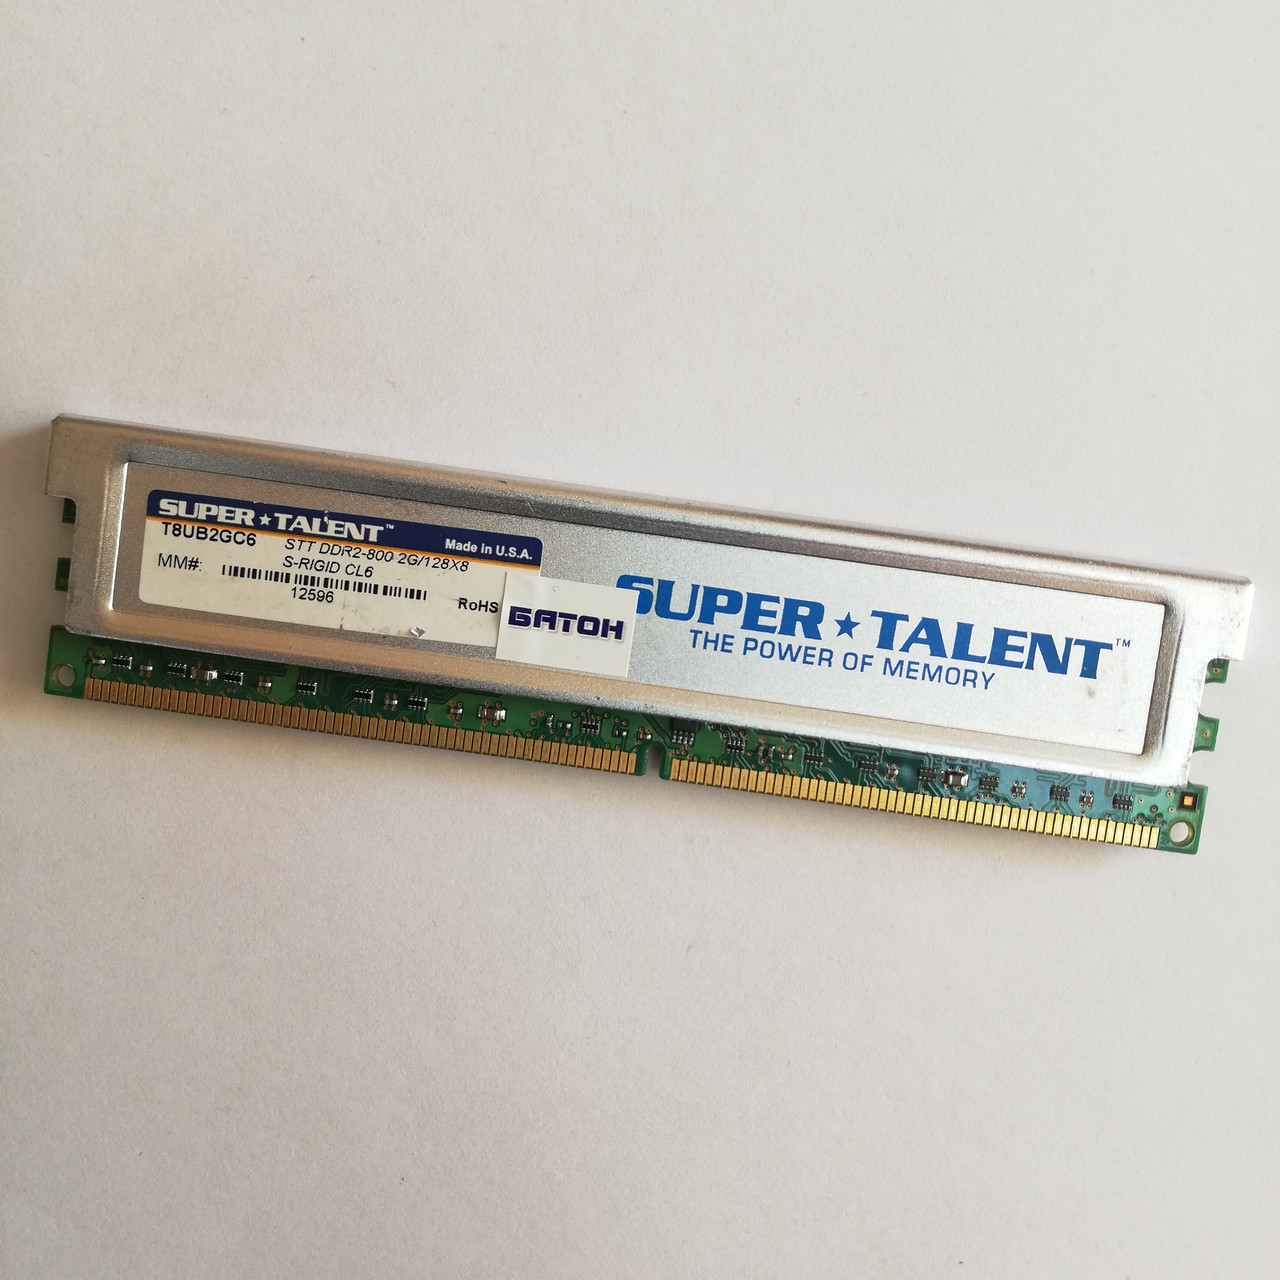 Ігрова оперативна пам'ять Super Talent DDR2 2Gb 800MHz PC2 6400U CL6 (T8UB2GC6) Б/В, фото 1